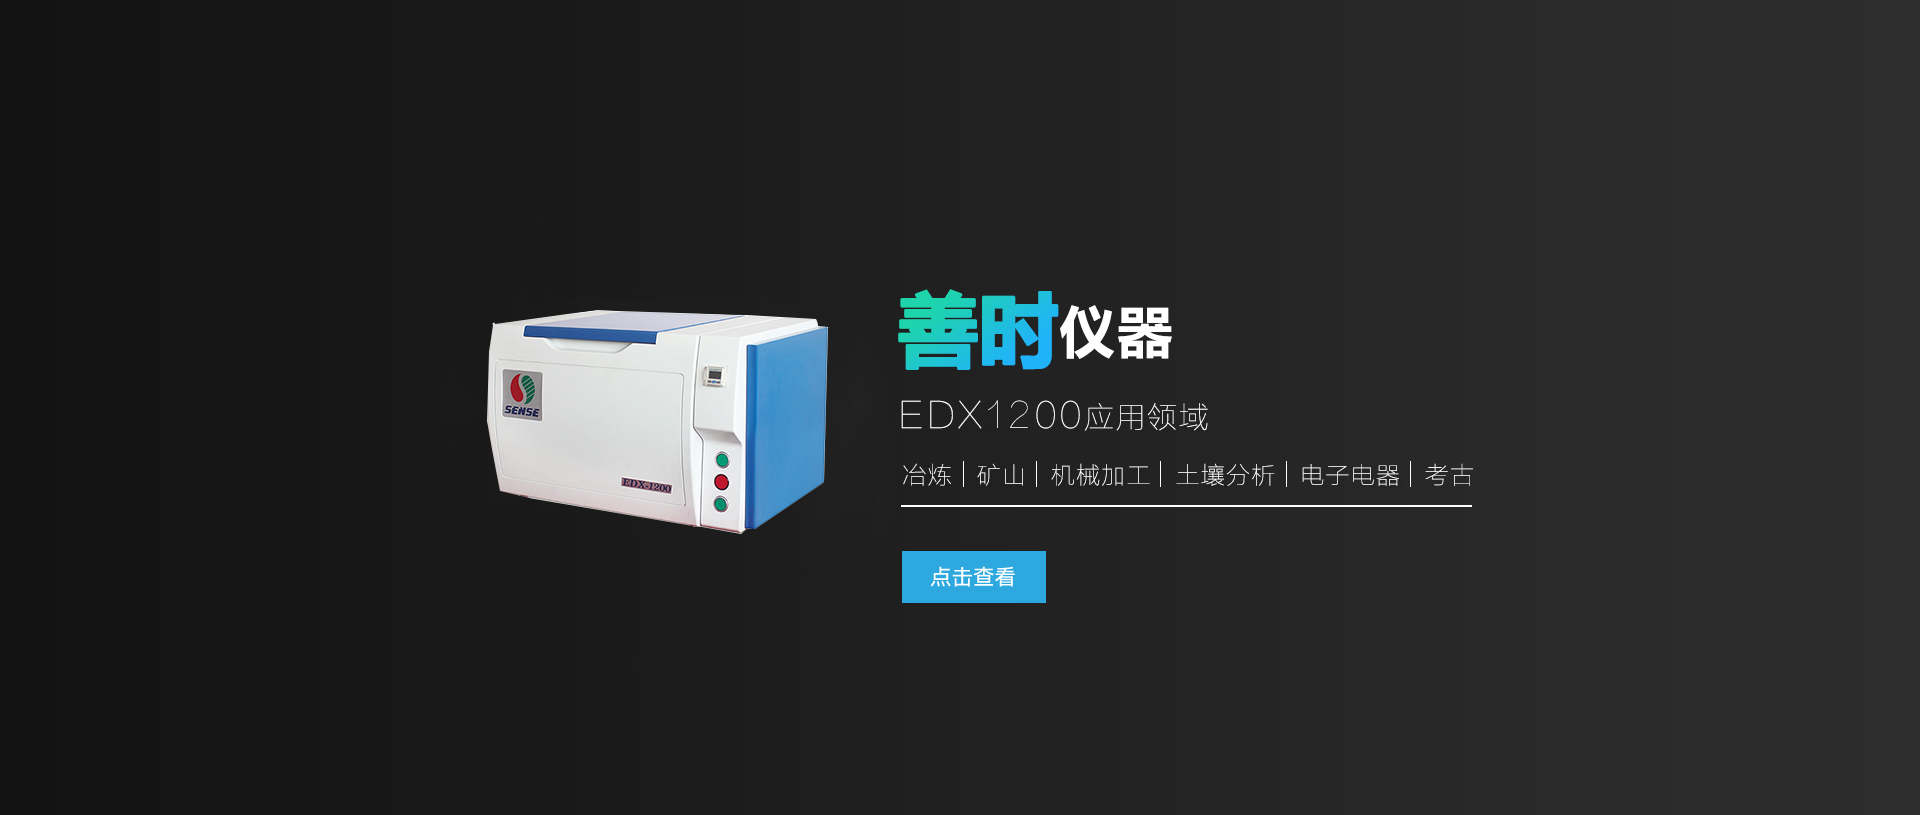 EDX-1200合金分析仪